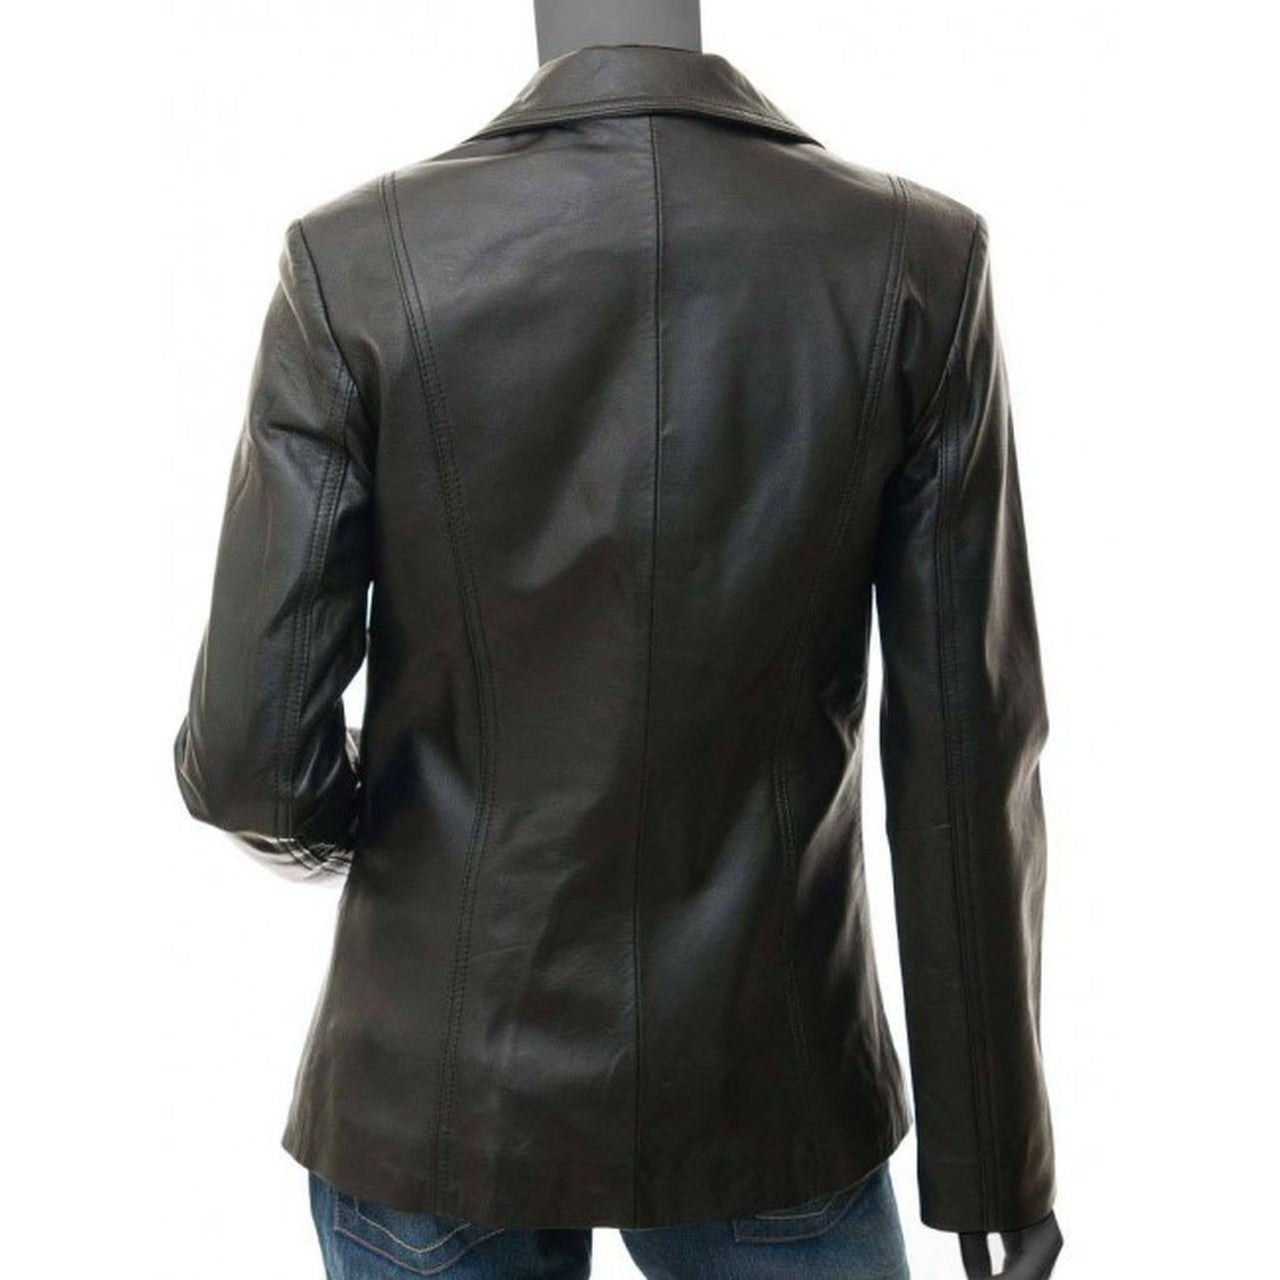 Black Leather Blazer Jacket Women - Leather Jacket